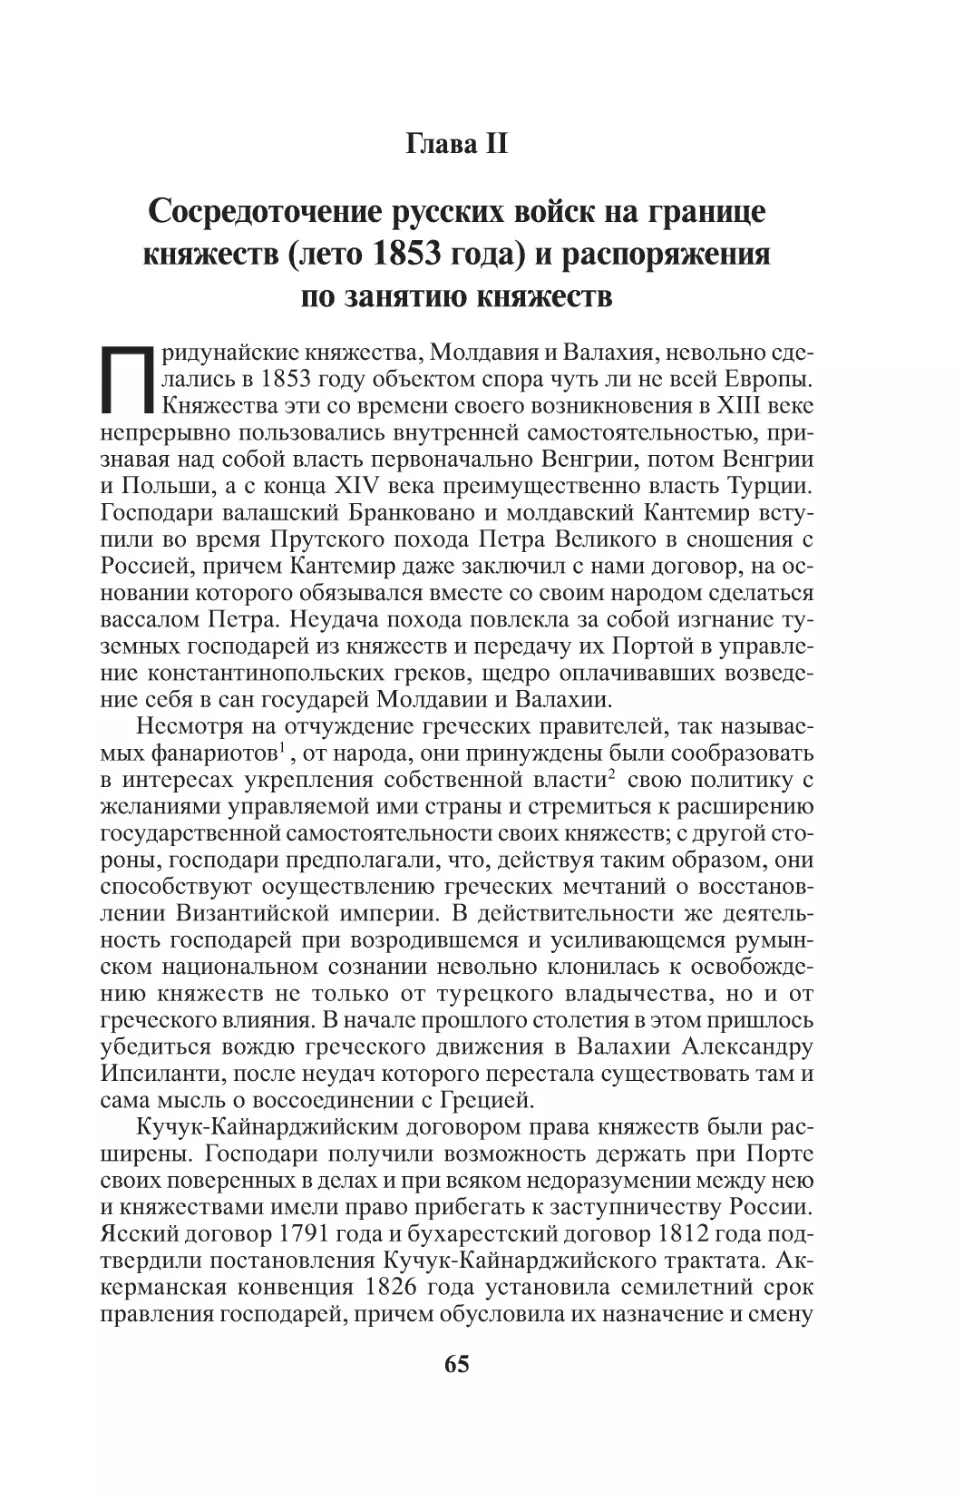 Глава II. Сосредоточение русских войск на границе Княжеств(лето 1853 года) и распоряжения по занятию Княжеств